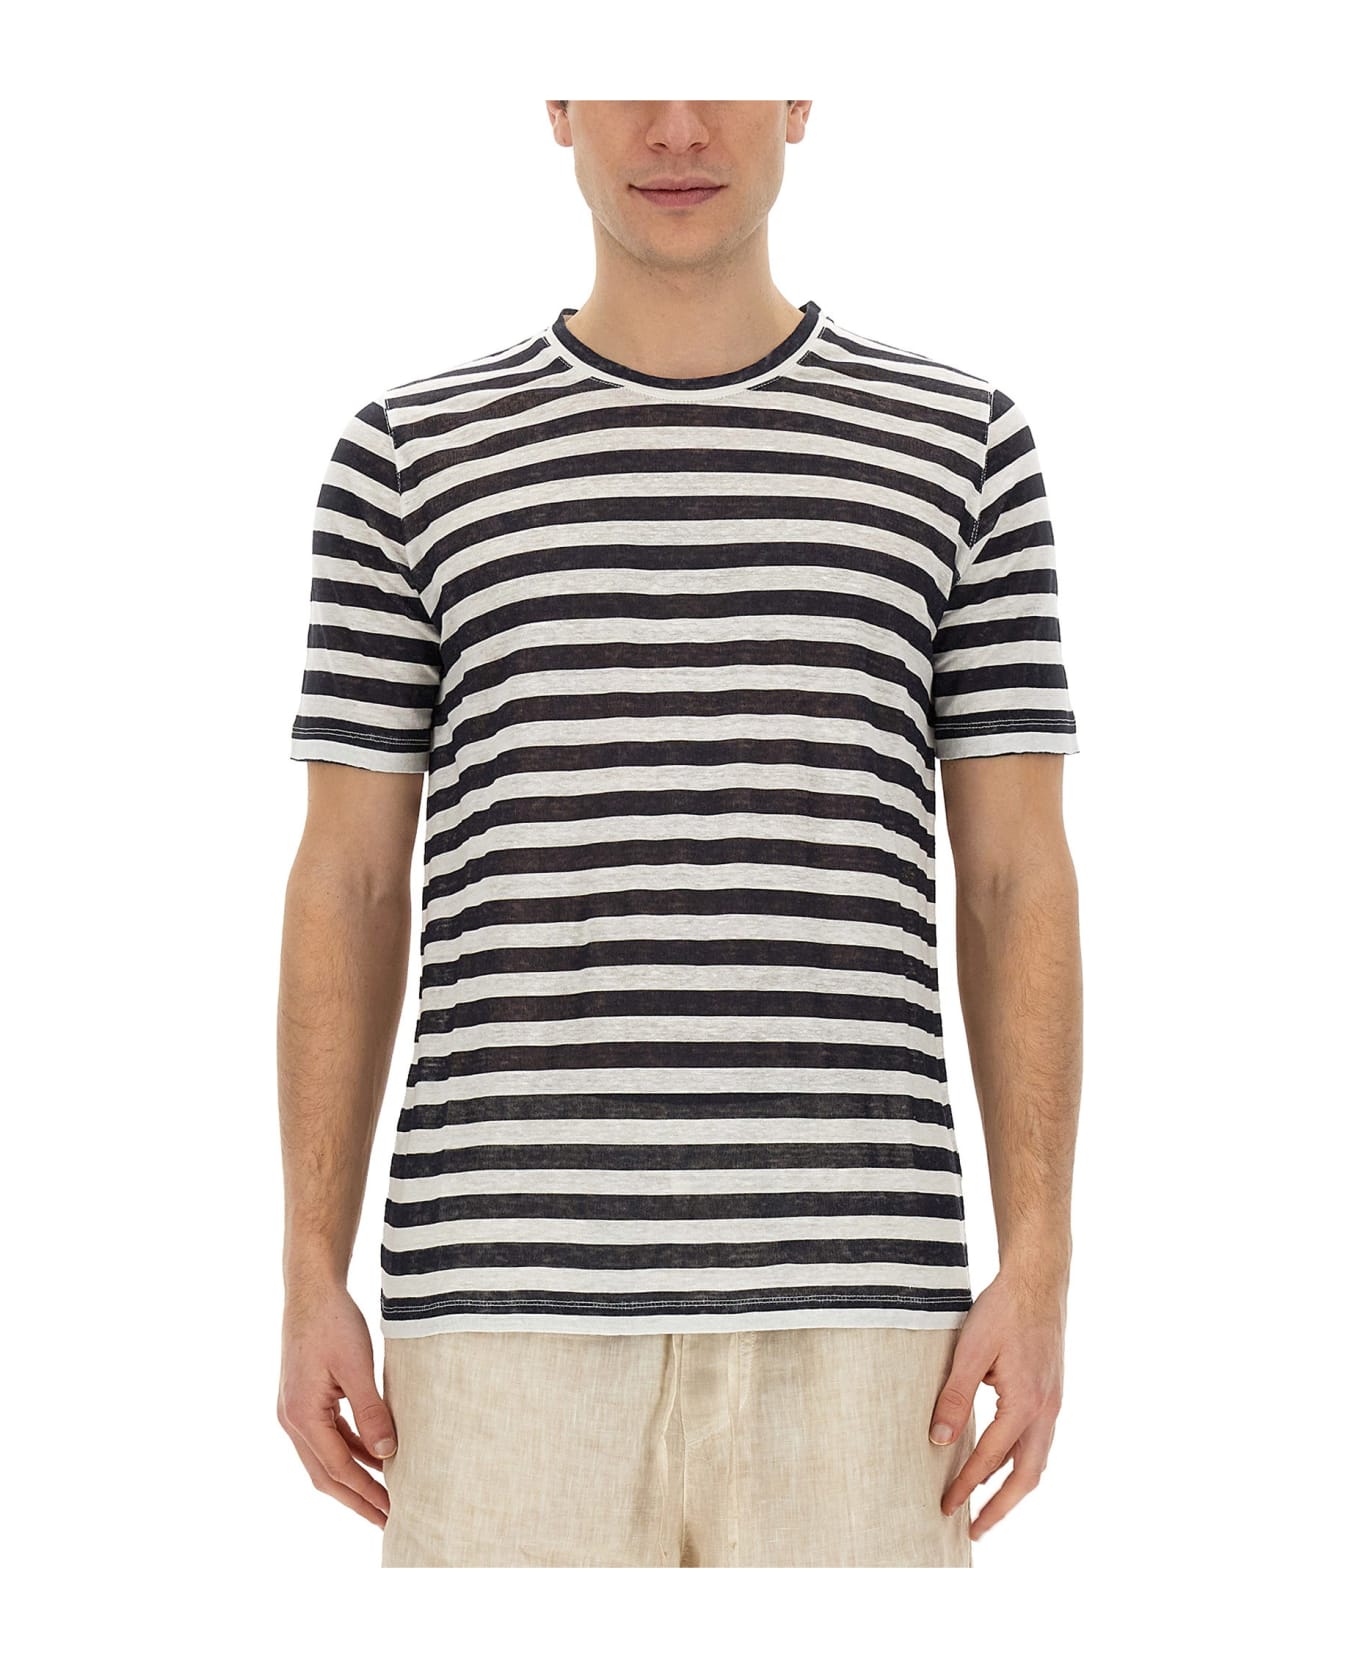 120% Lino Striped T-shirt シャツ